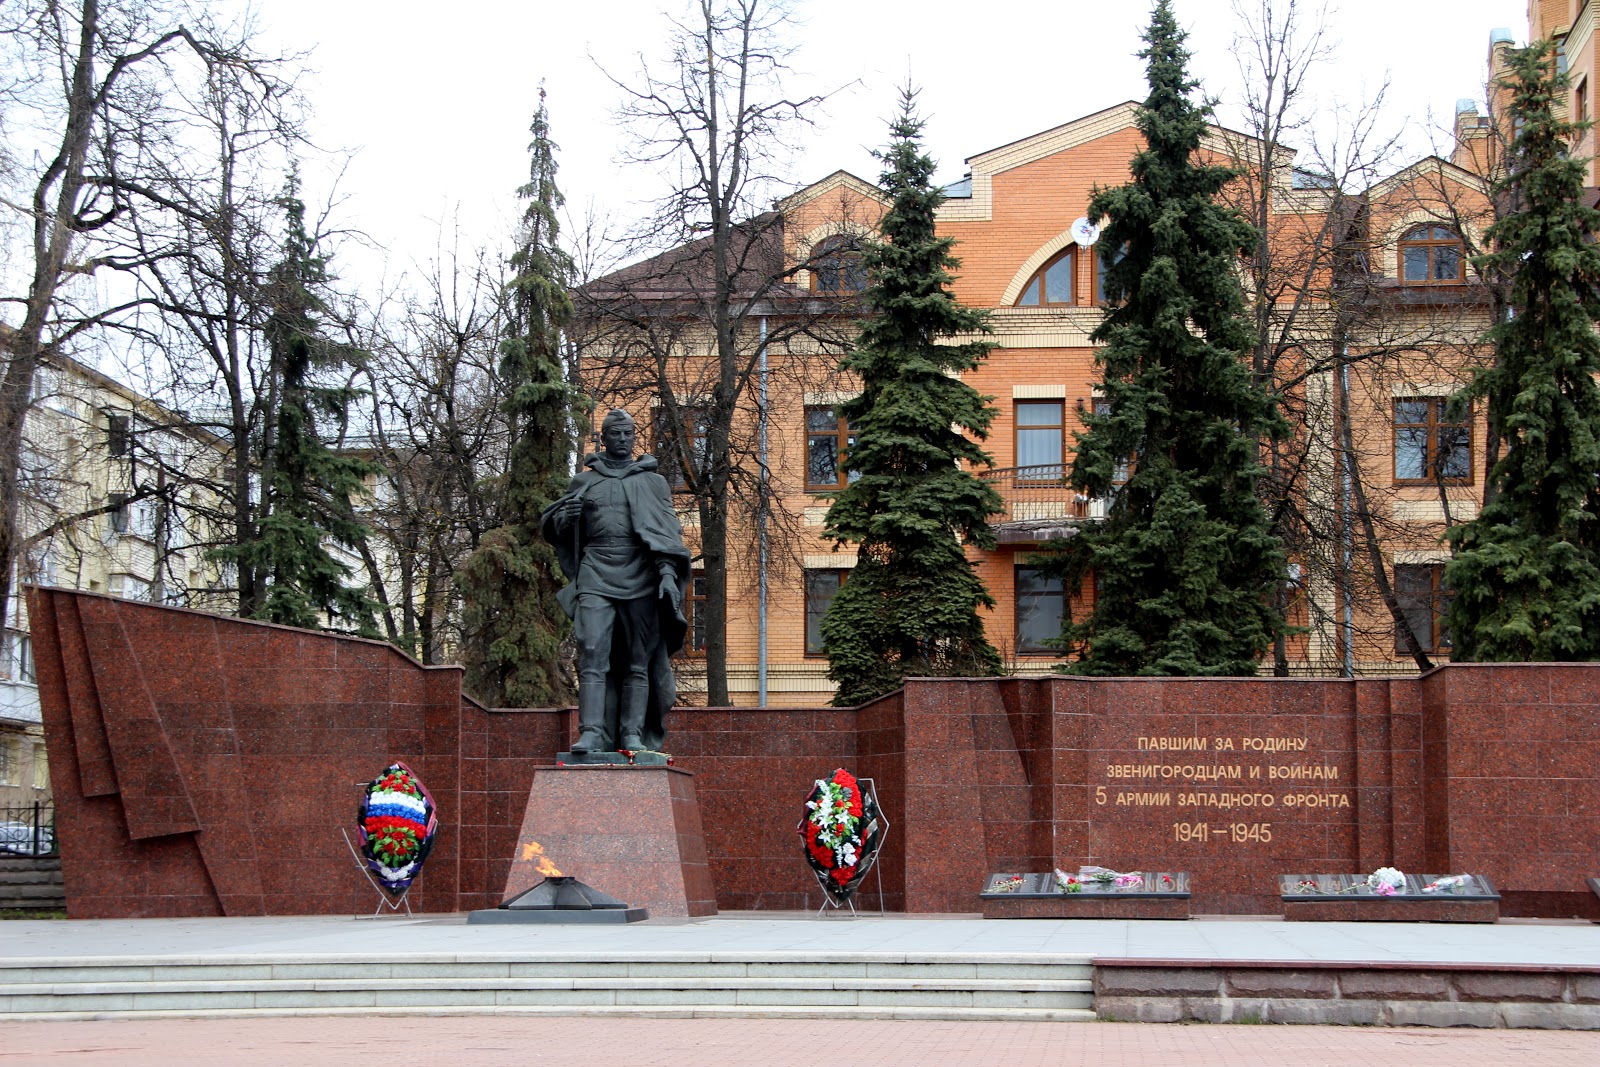 Мемориальный комплекс павшим за родину звенигородцам в годы Великой Отечественной войны